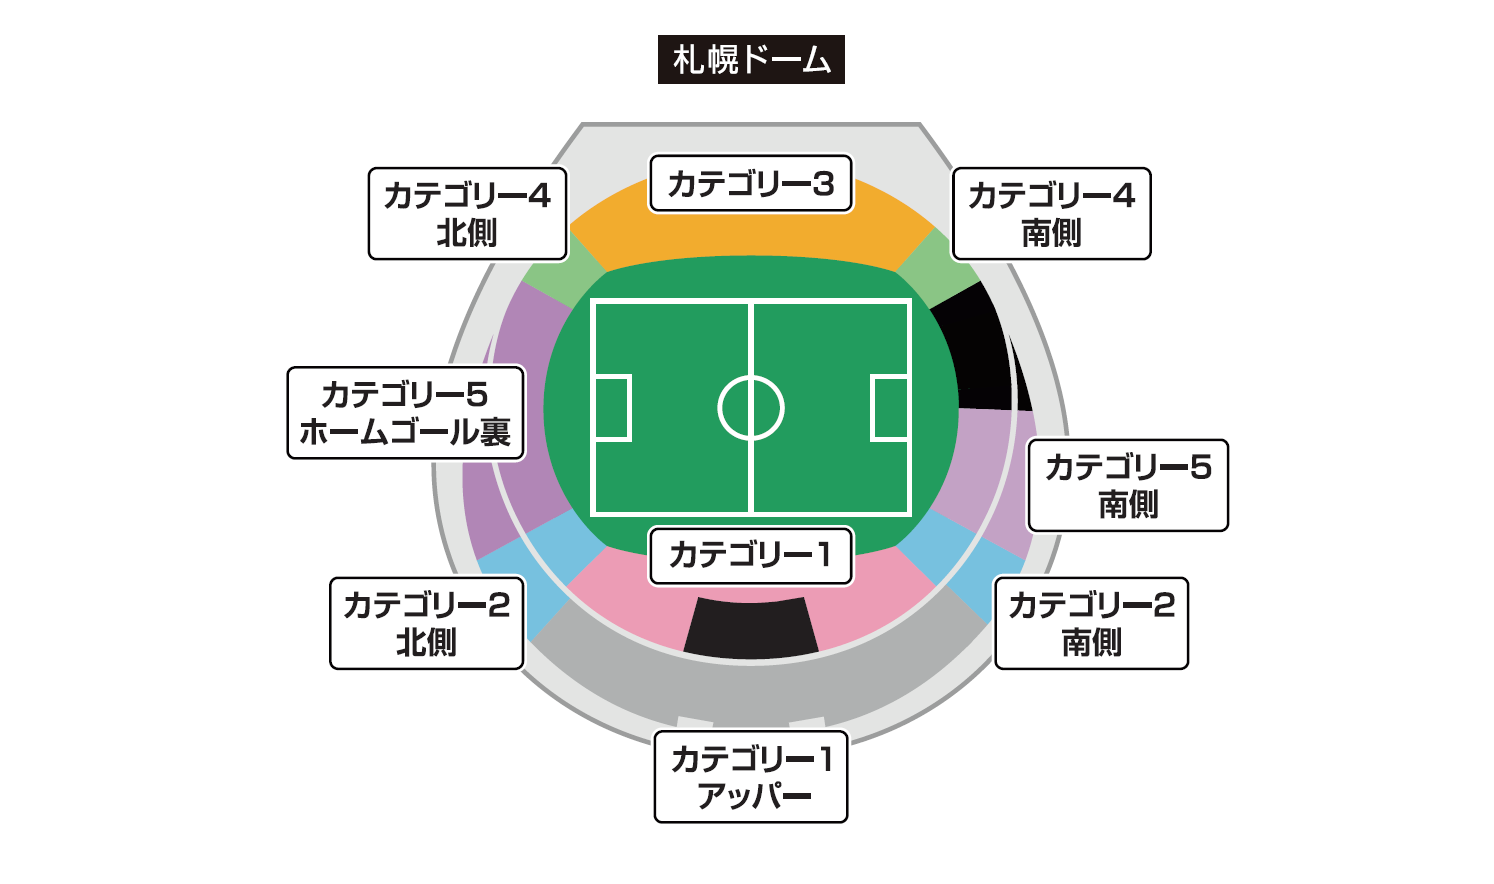 試合イベント情報 2月27日 土 横浜fc戦 北海道コンサドーレ札幌公式